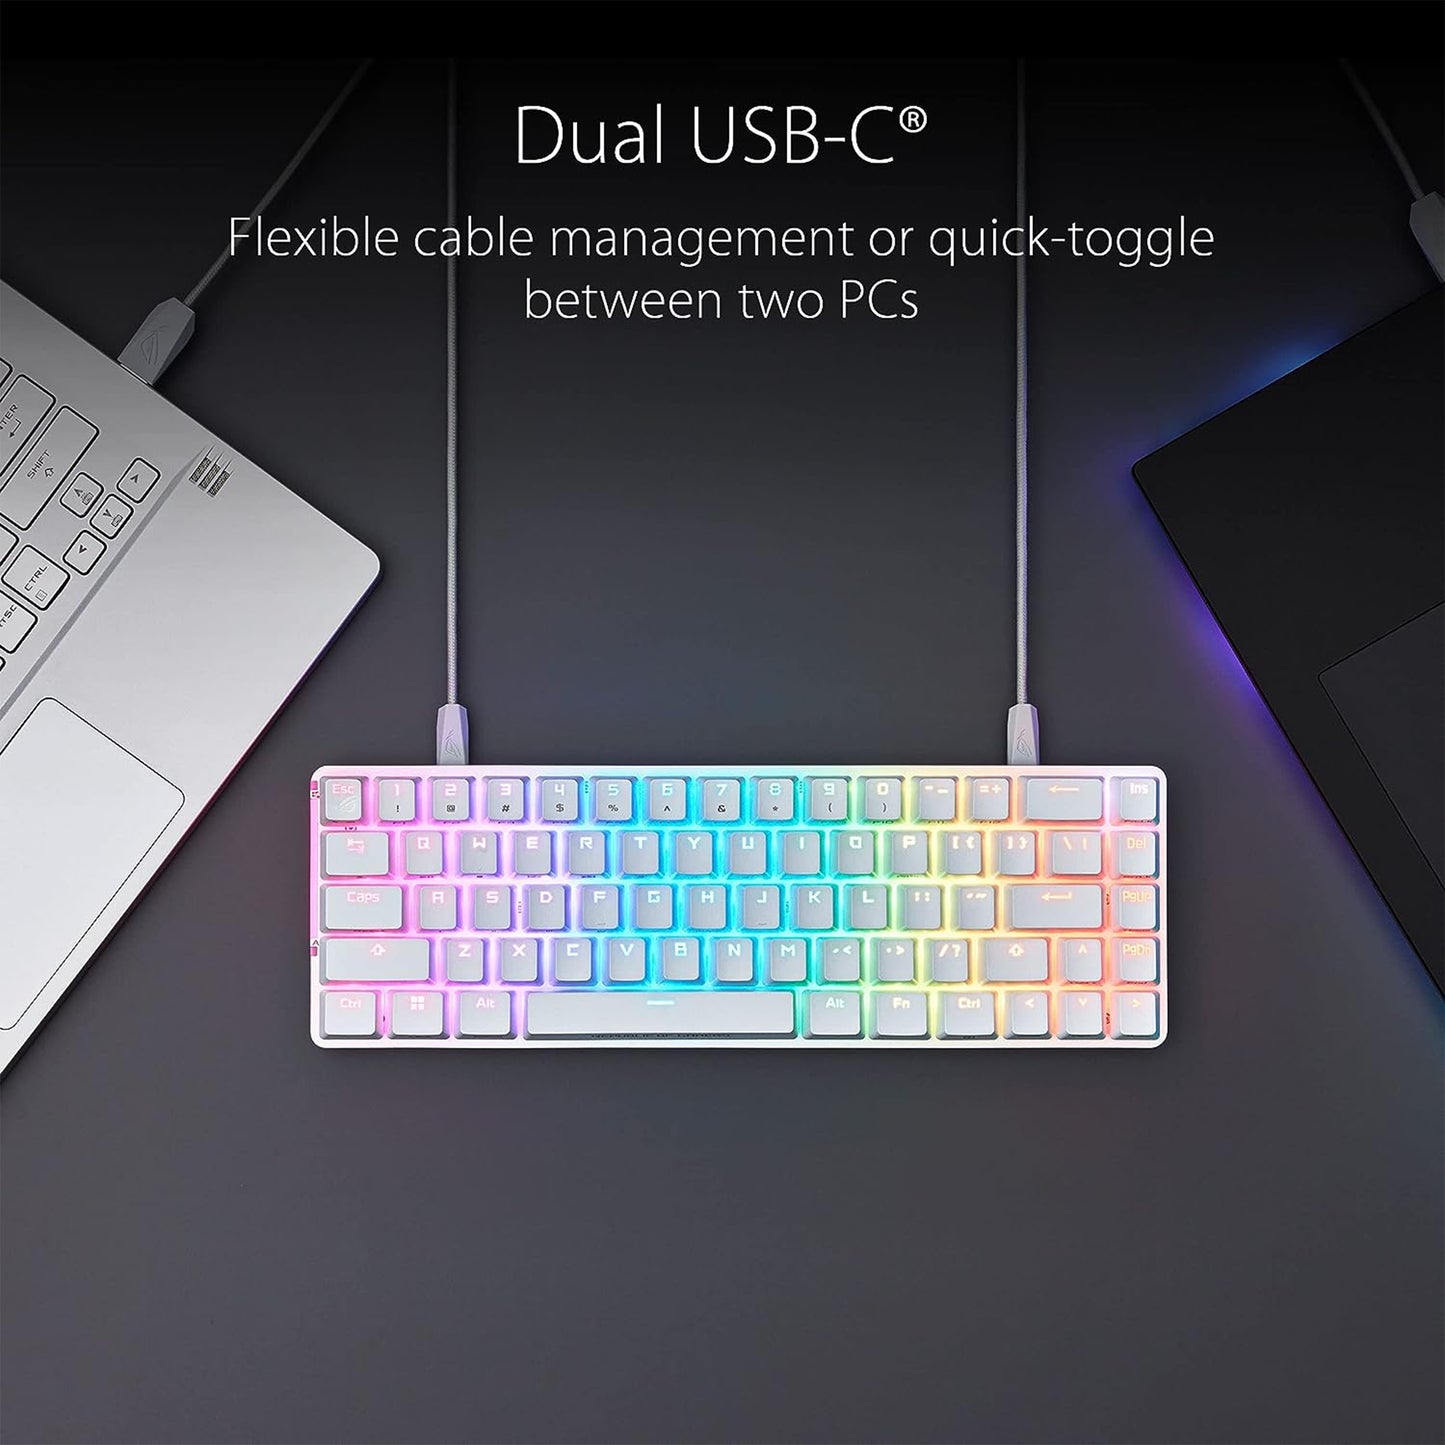 لوحة مفاتيح ميكانيكية مدمجة للألعاب ASUS ROG Falchion Ace 65% RGB، ومفاتيح ROG NX حمراء ومثبتات مفاتيح، وإسفنج مثبط الصوت، وأغطية مفاتيح PBT، سلكية مع KVM، وثلاث زوايا، وغطاء غطاء أبيض 